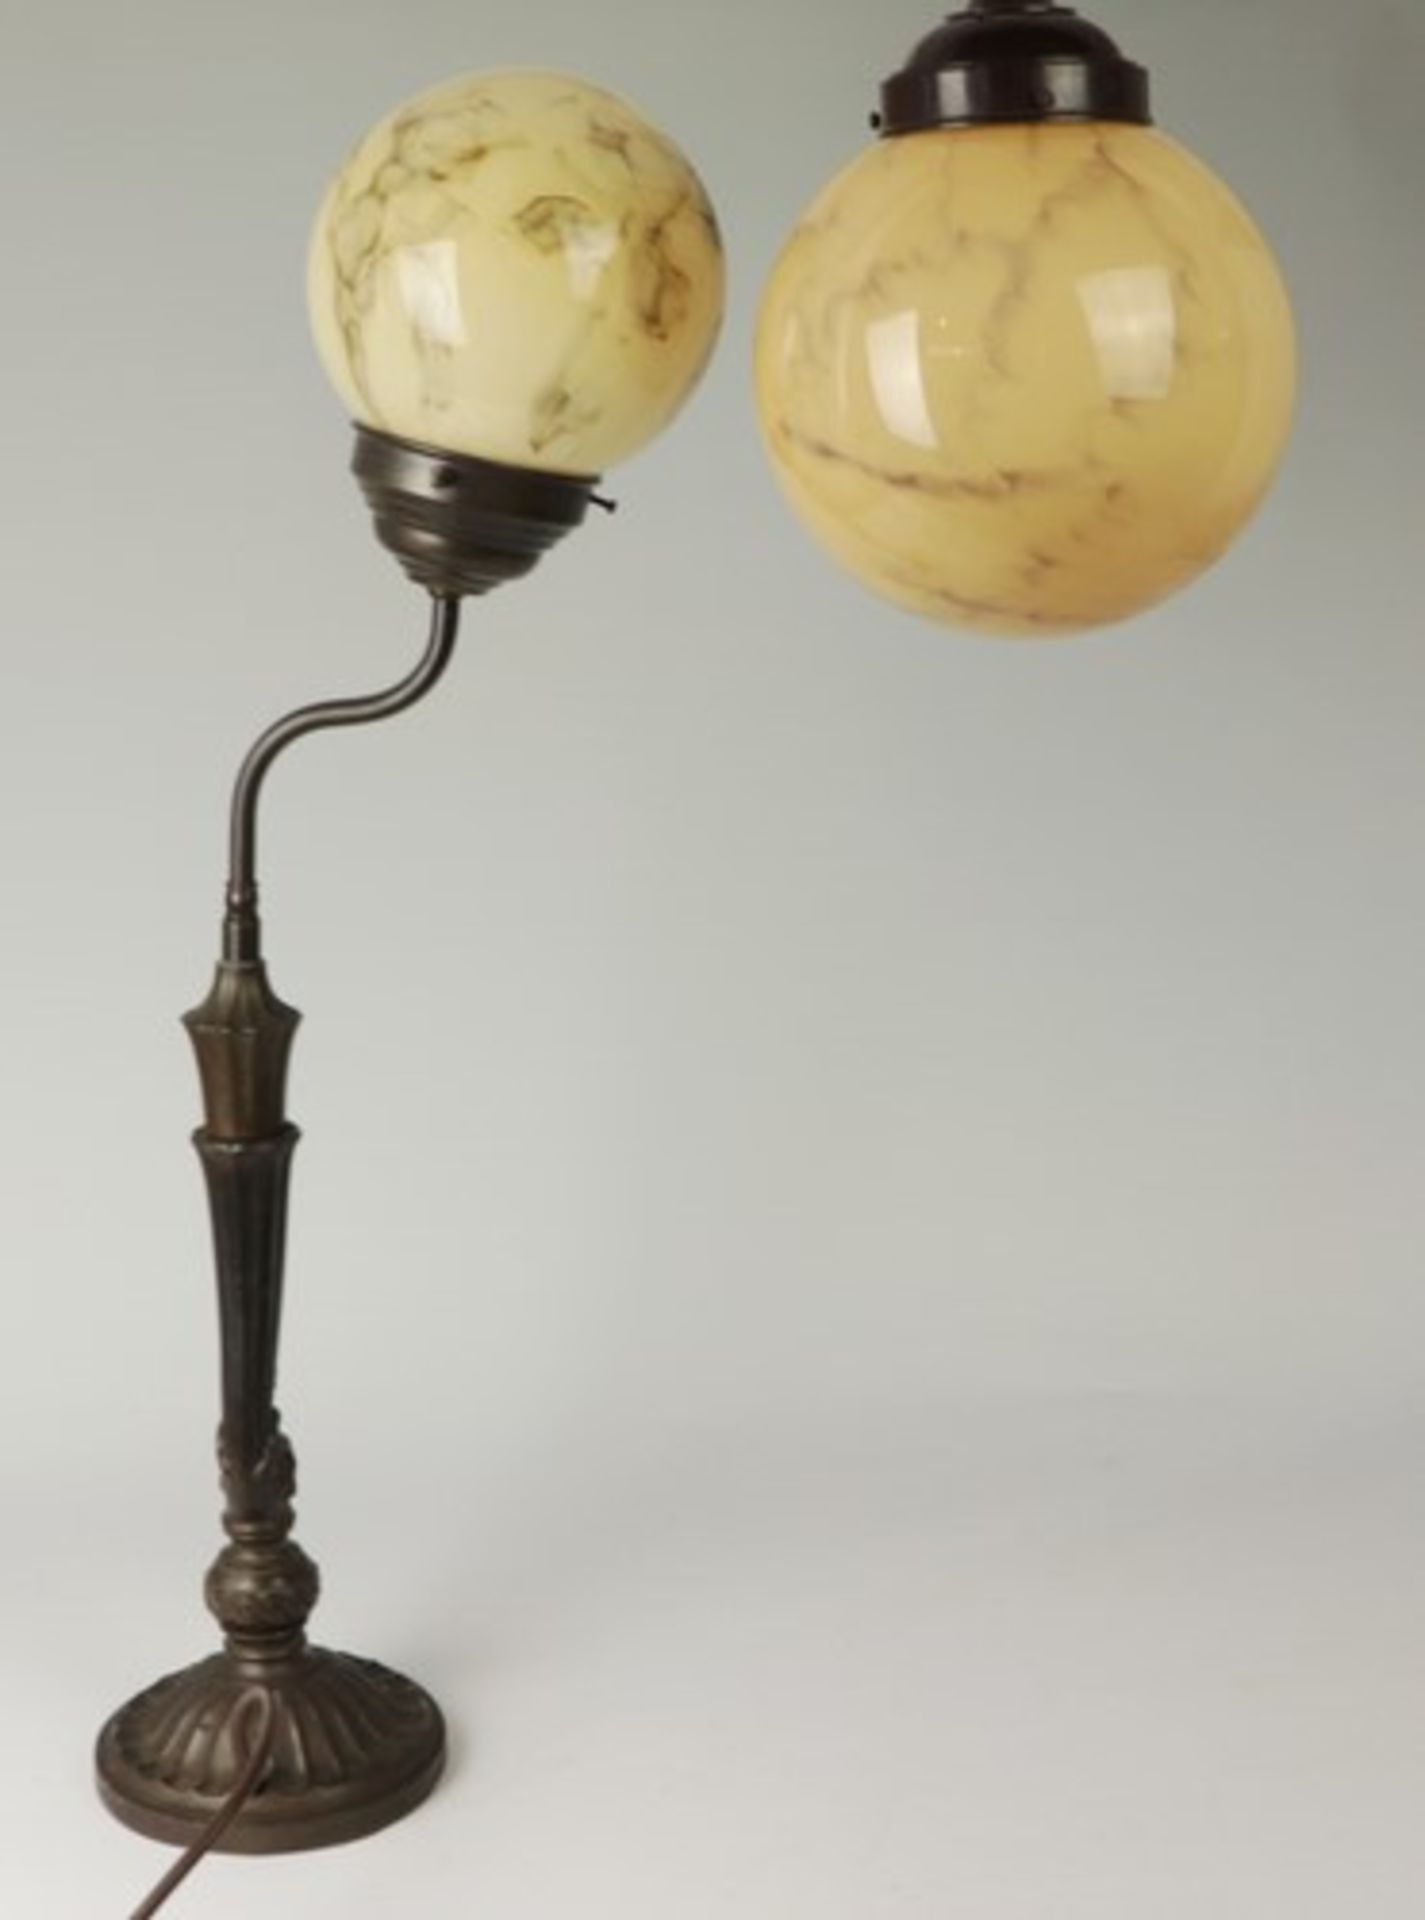 TischlampeMetall, einflammig, Rundfuß, konischer Schaft, kanneliert, un. reliefierte Kugel, - Image 2 of 4